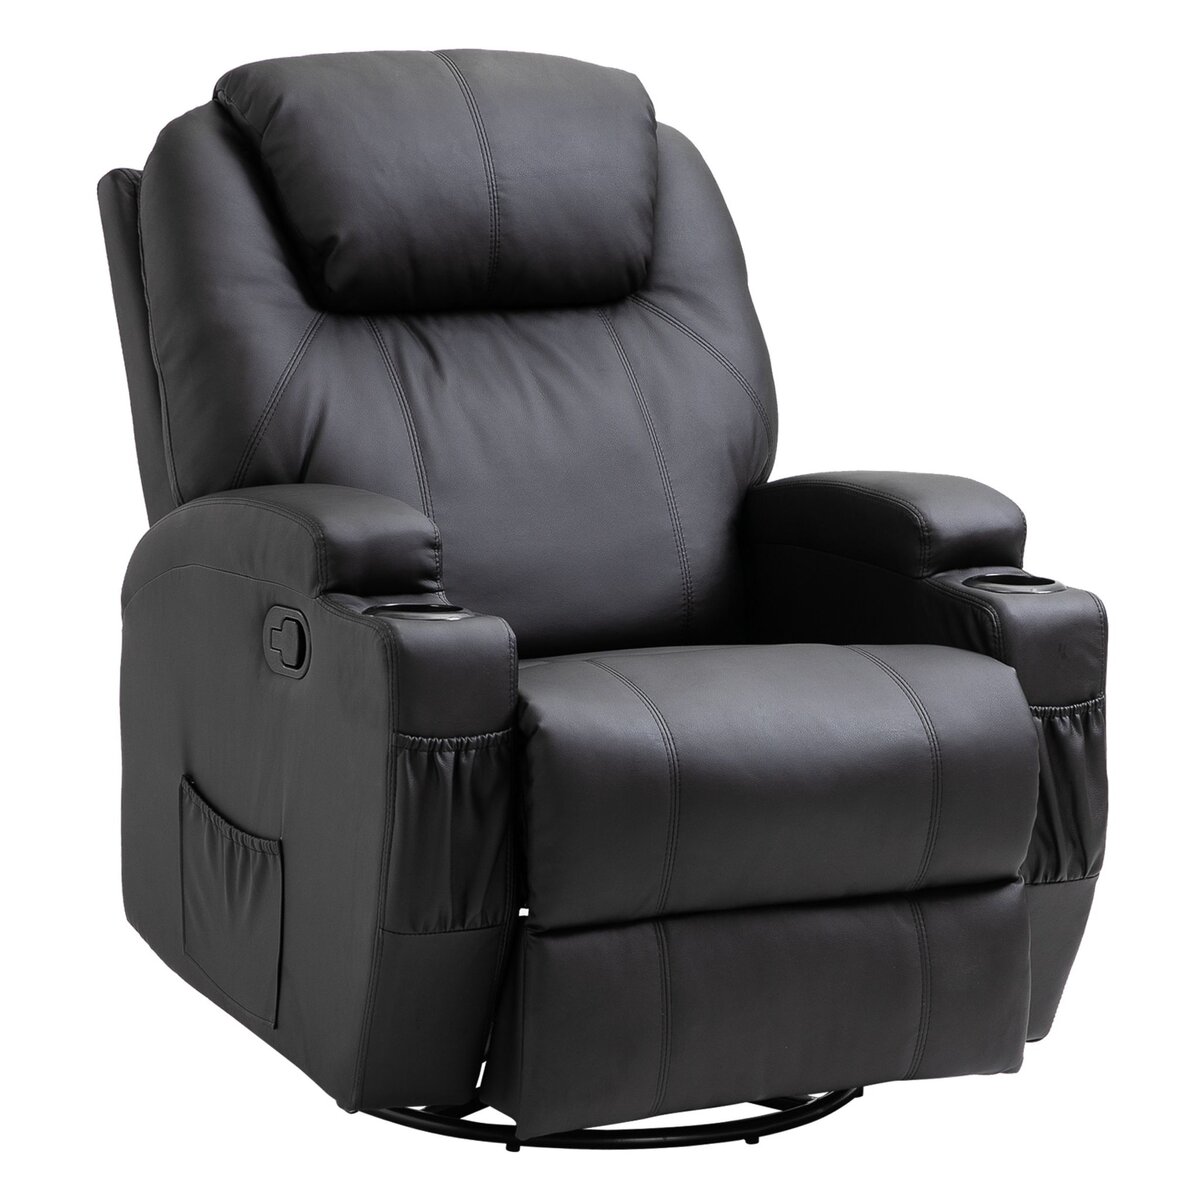 HOMCOM Fauteuil luxe de relaxation et massage inclinaison dossier repose-pied réglable revêtement synthétique noir